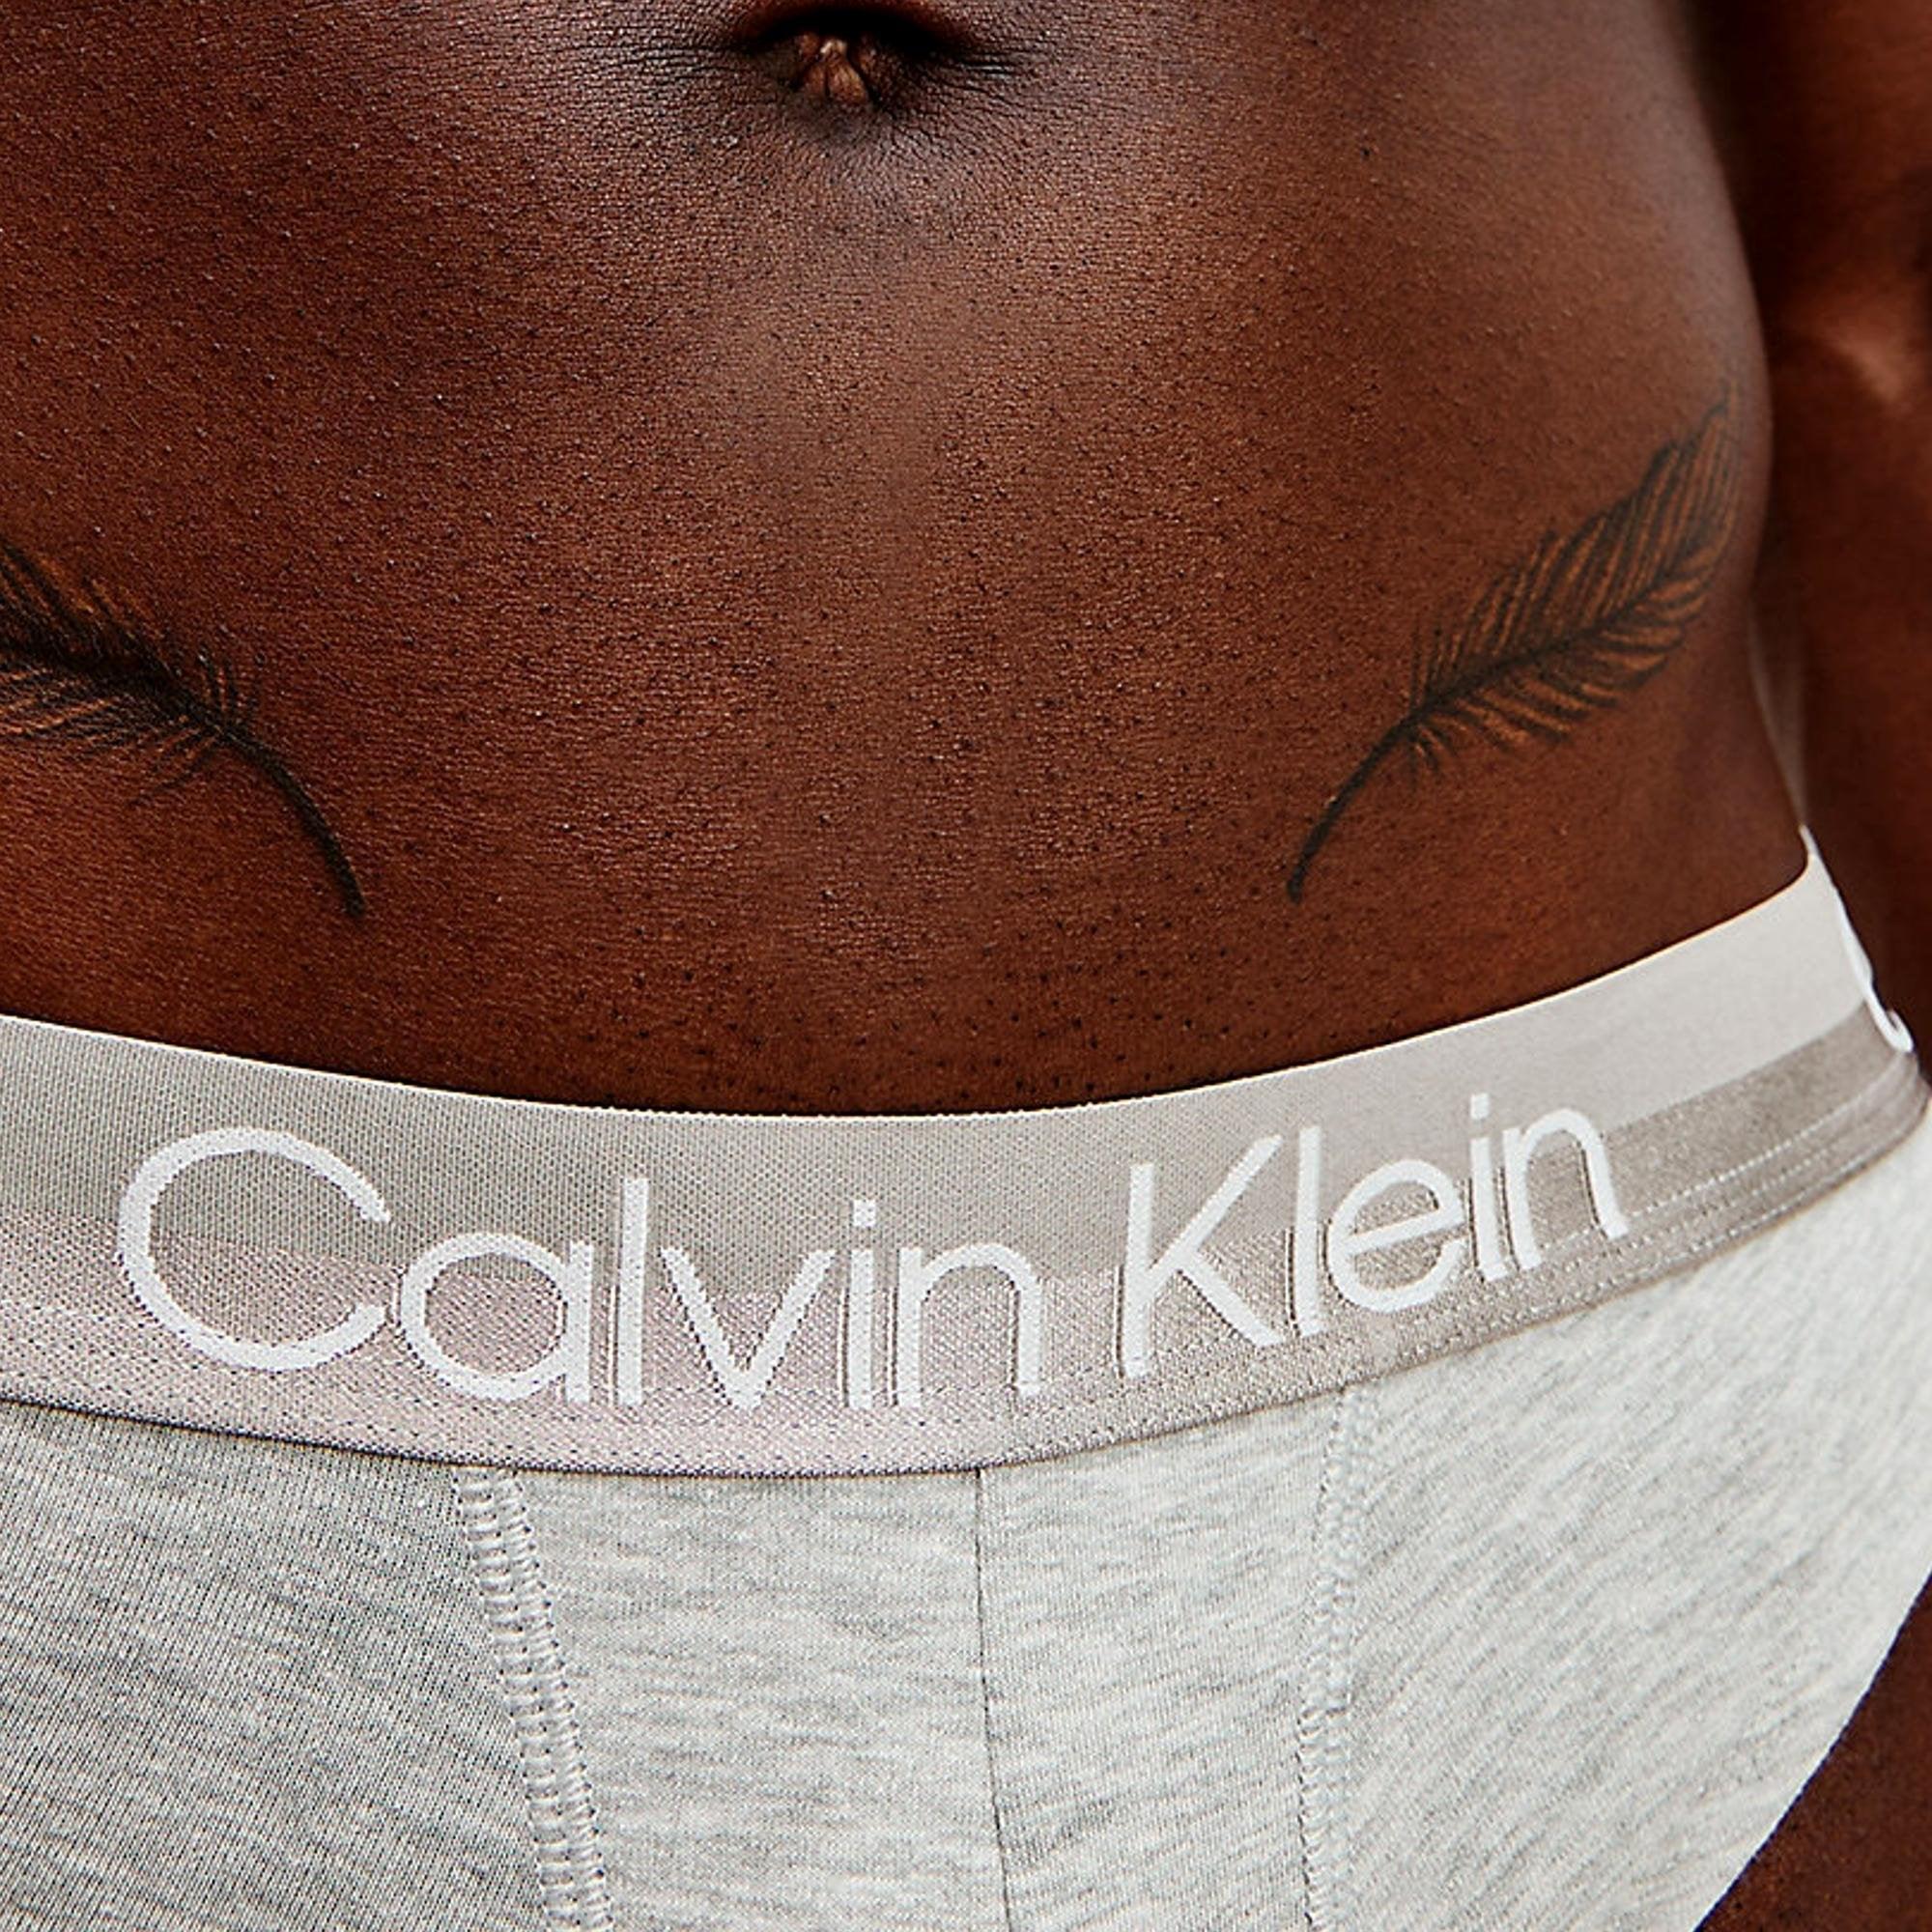 Calvin Klein Structure Hip Brief Black